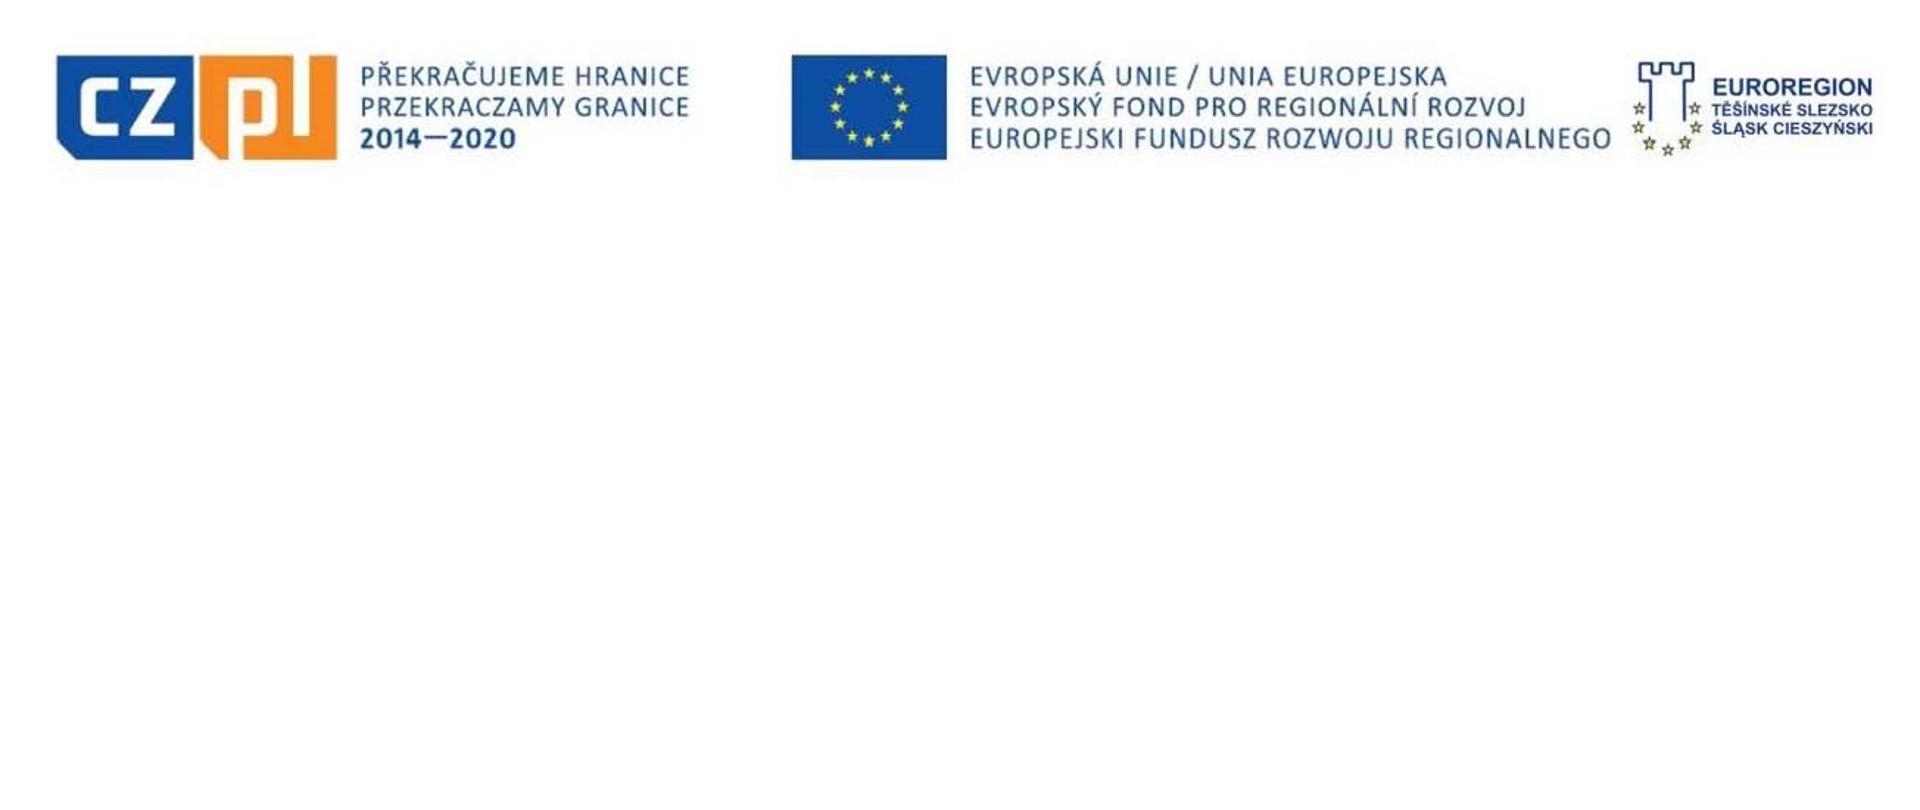 Od lewej do prawej loga: Przekraczamy granice 2014-2020, Unia Europejska - Europejski Fundusz Rozwoju Regionalnego, Euroregion Těšínské Slezsko – Śląsk Cieszyński